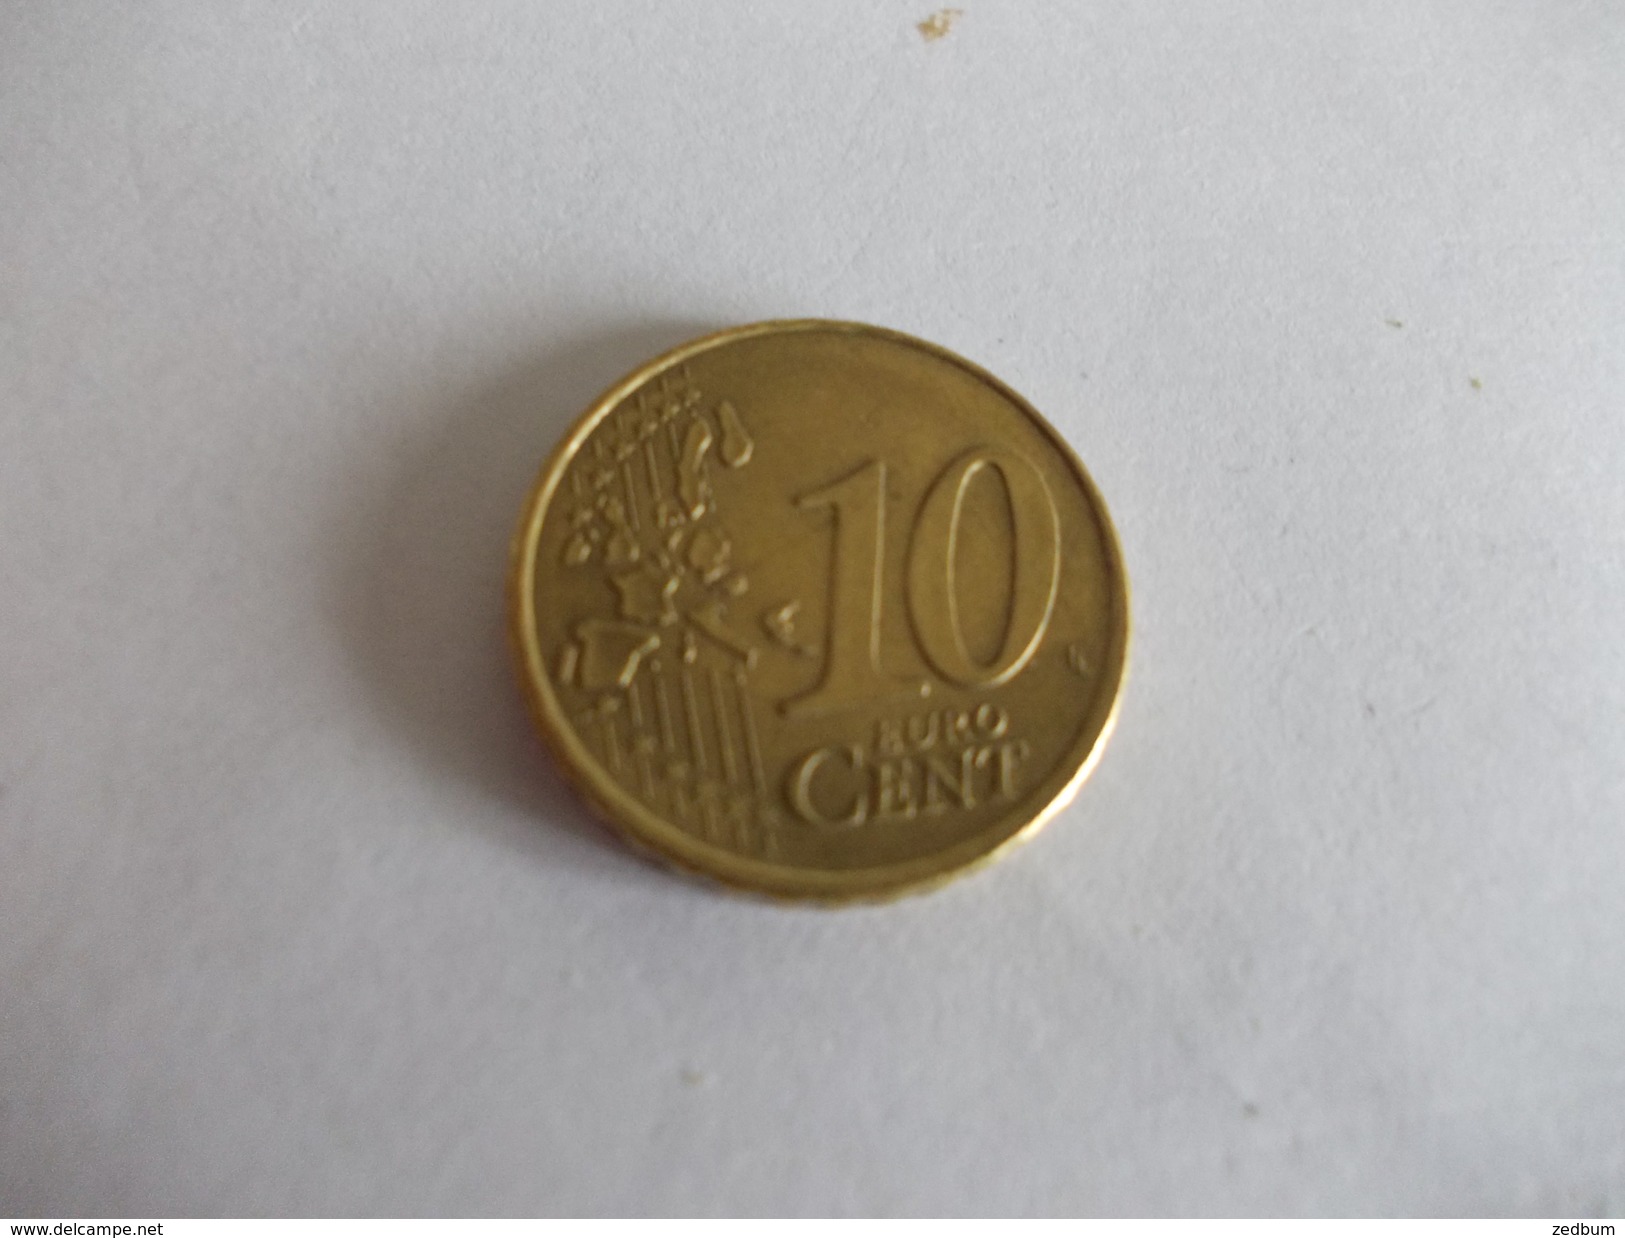 Monnaie Pièce De 10 Centimes D' Euro De Pays Bas Année 2000 Valeur Argus 1 &euro; - Paises Bajos